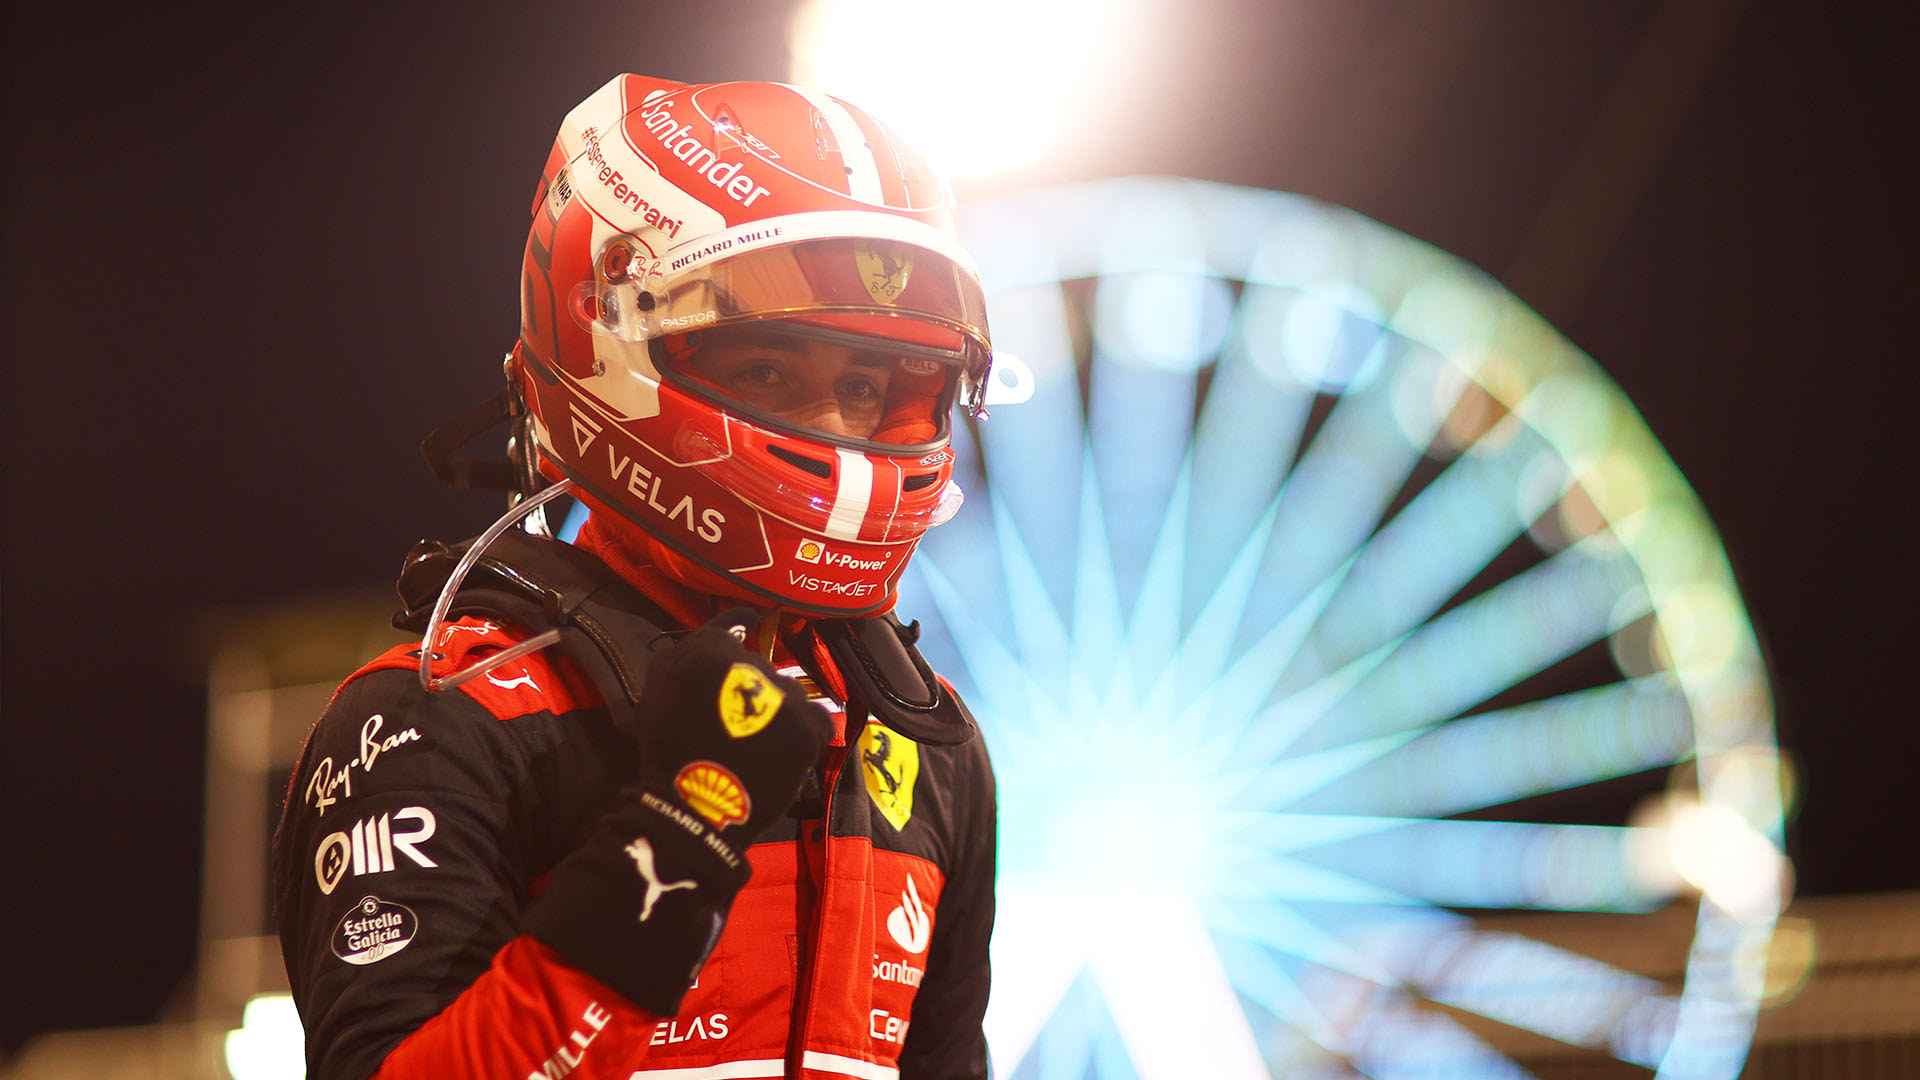 Rapport et qualifications du Grand Prix de Bahreïn 2022: Leclerc prend la superbe pole bahreïnite de Ferrari devant Verstappen et Sainz